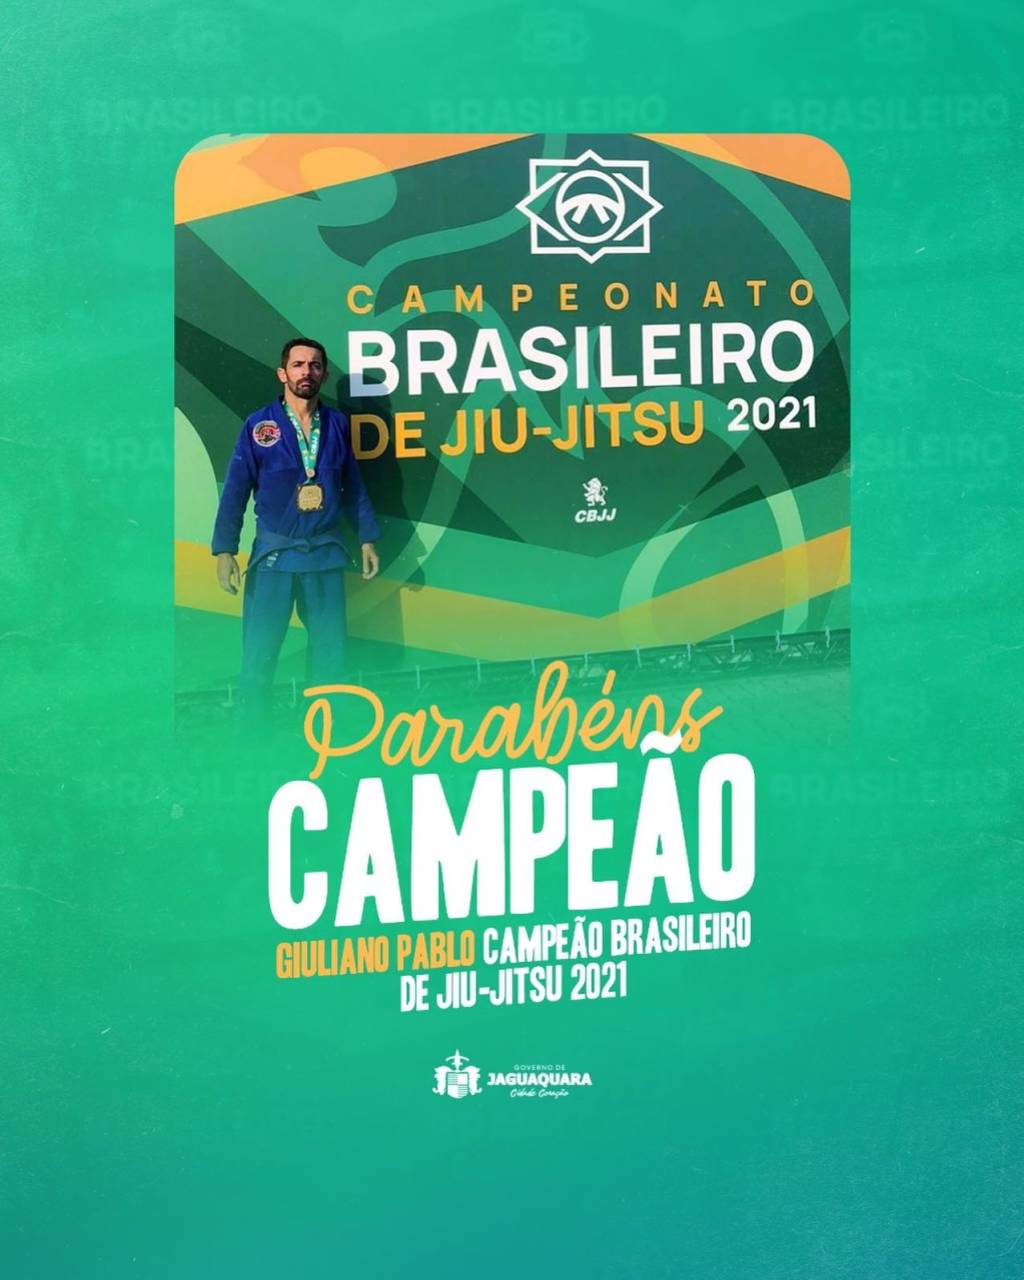 Atletas de Jiu-jitsu da Diego Nery- Corpo e Mente conquista 32 medalhas no Campeonato  Mundial - Itiruçu Online - Aqui Bahia